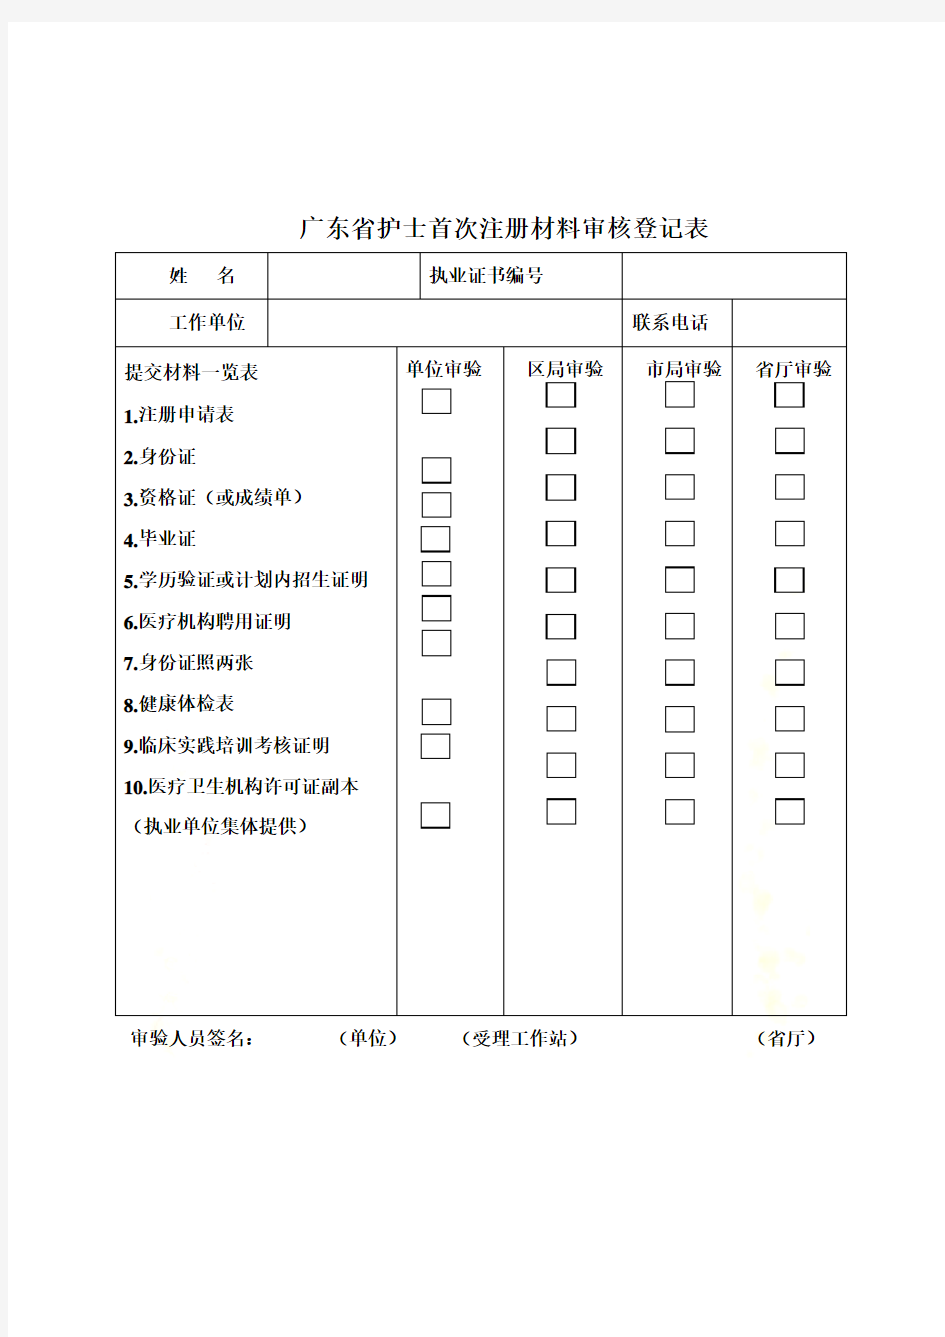 广东省护士首次注册材料审核登记表